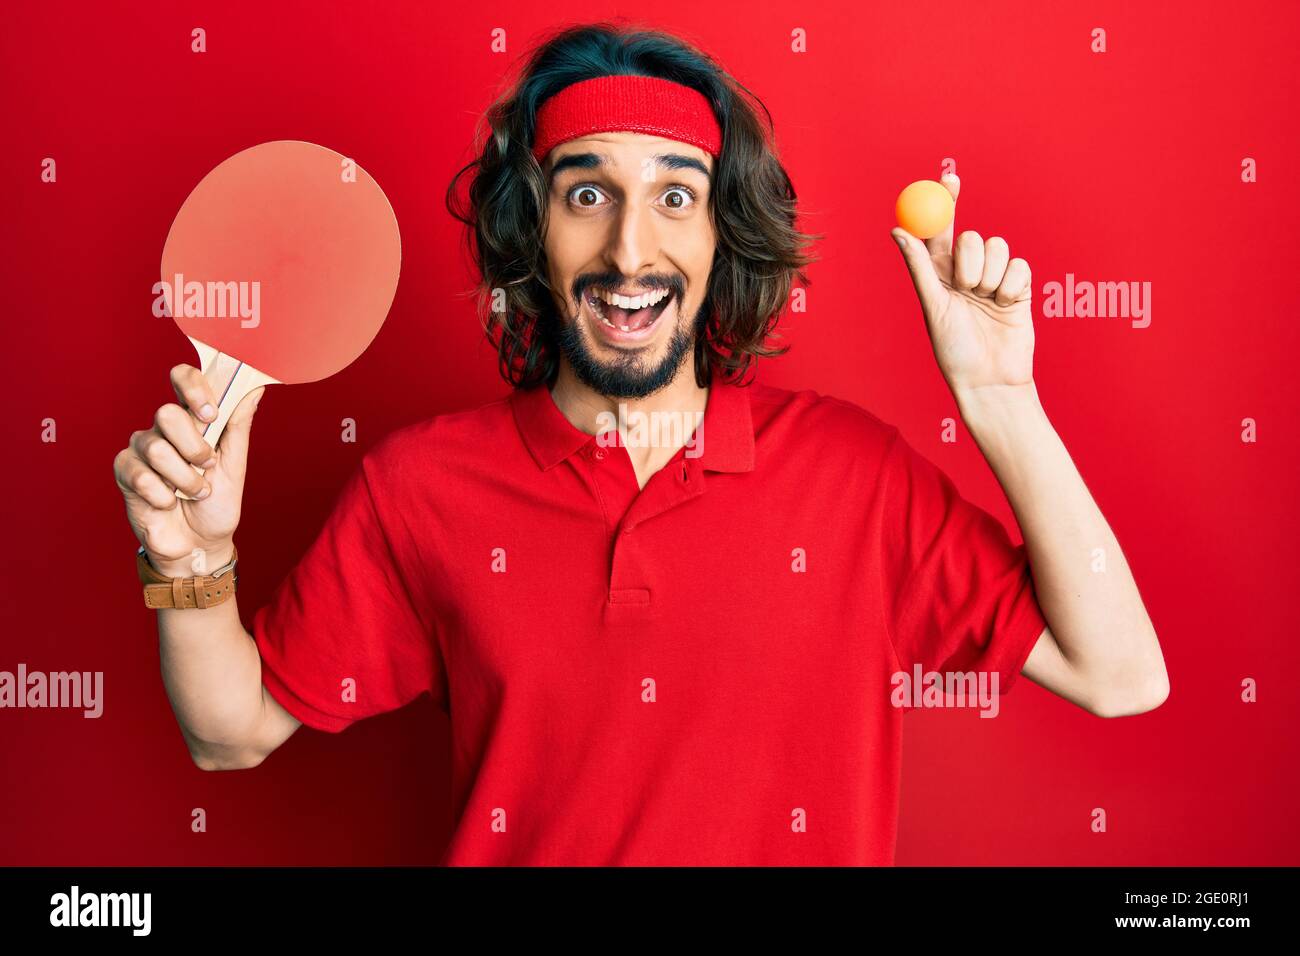 Junger hispanischer Mann mit rotem Ping-Pong-Schläger und Ball feiert verrückt und erstaunt über den Erfolg mit offenen Augen schreiend aufgeregt. Stockfoto